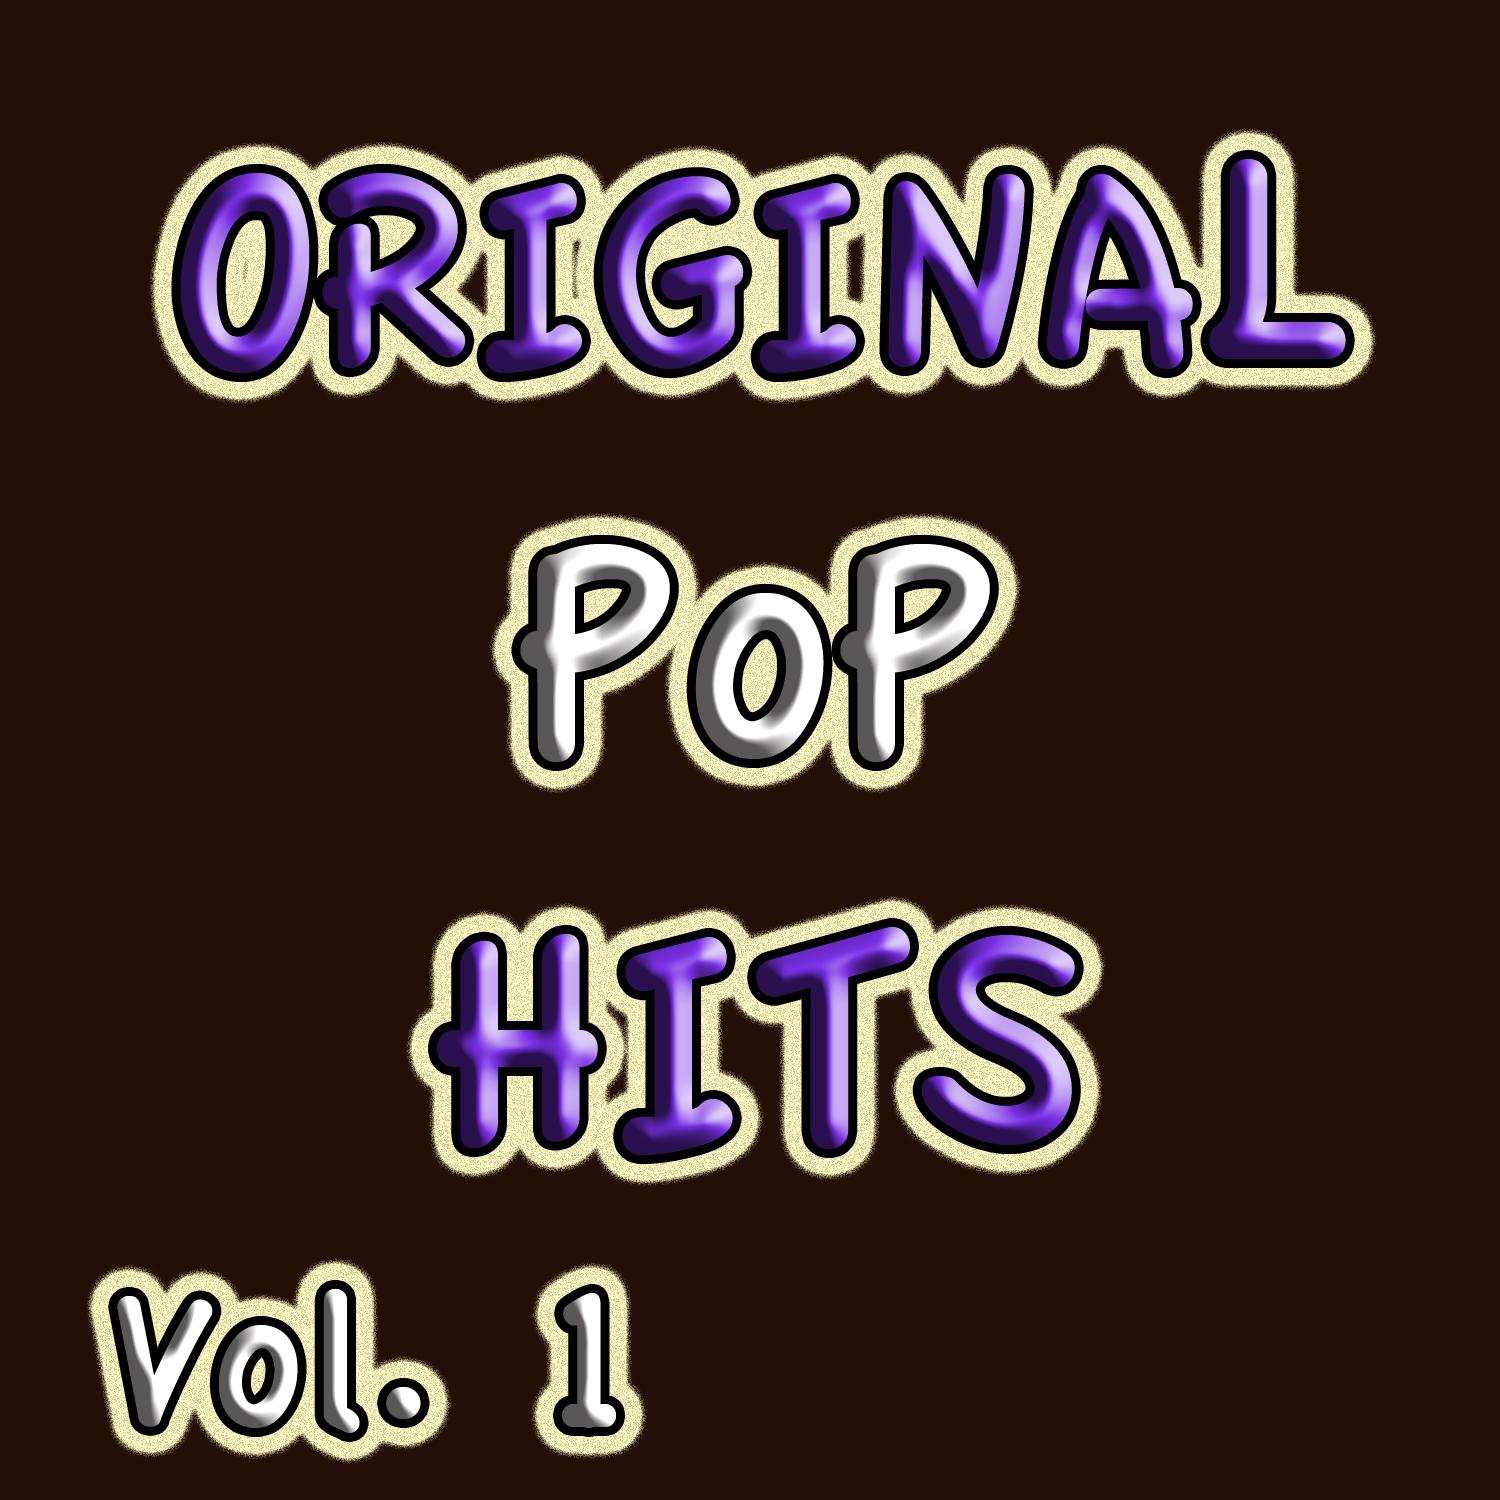 Original Pop Hits, Vol. 1